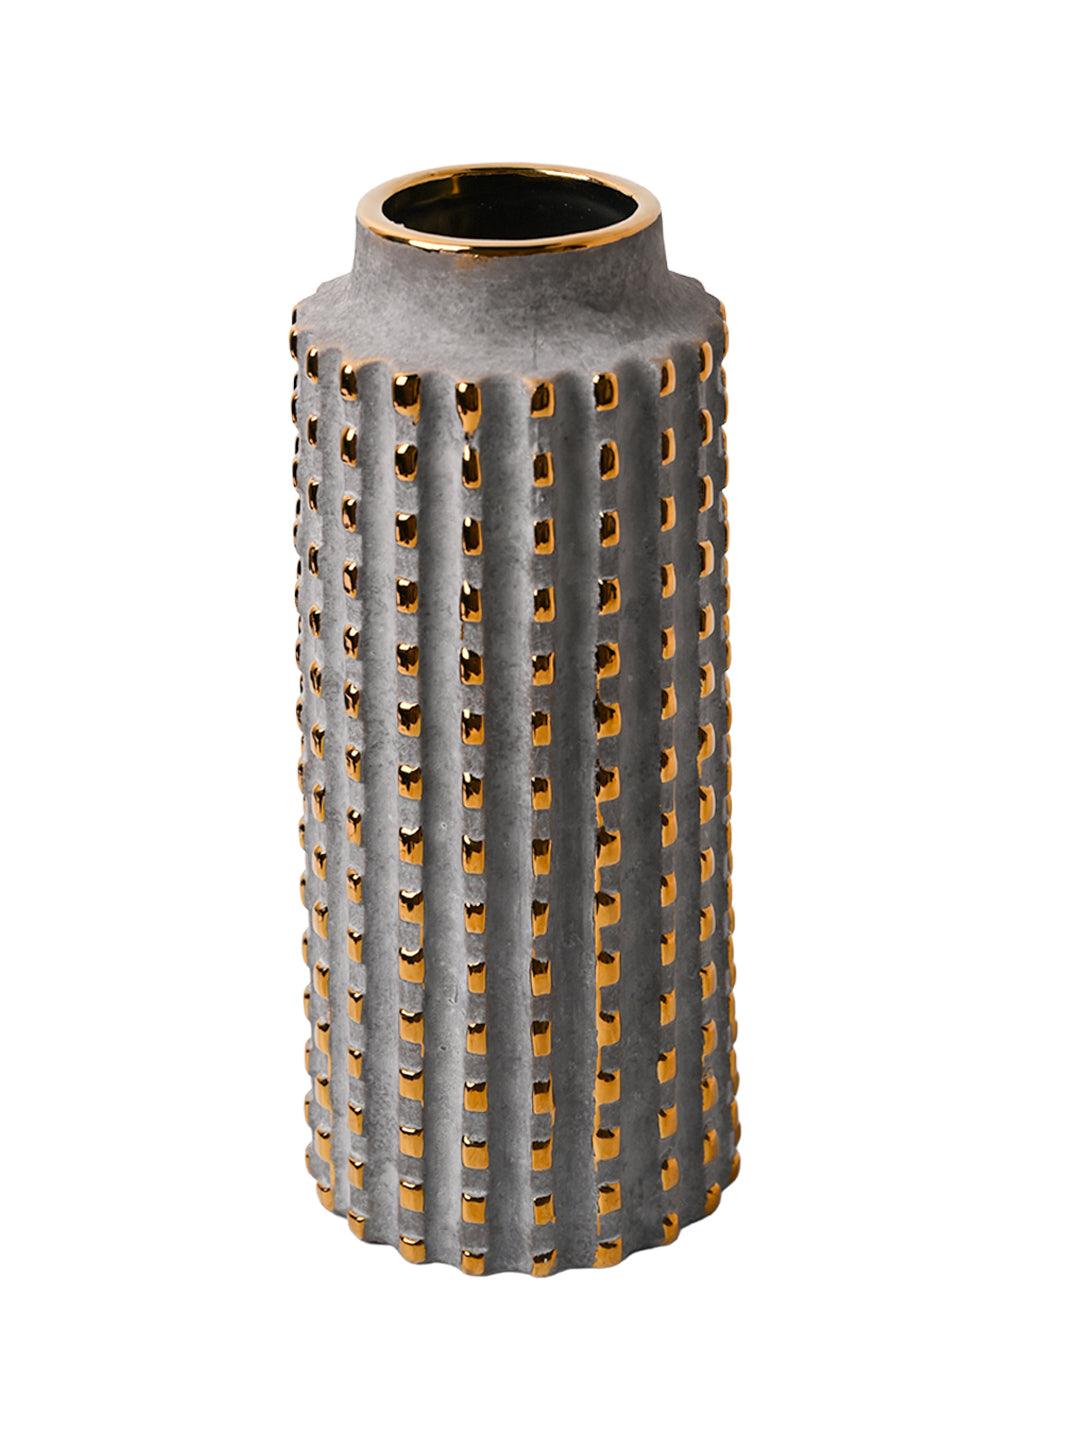 VON CASA Geometric Ceramic Vase - MARKET99